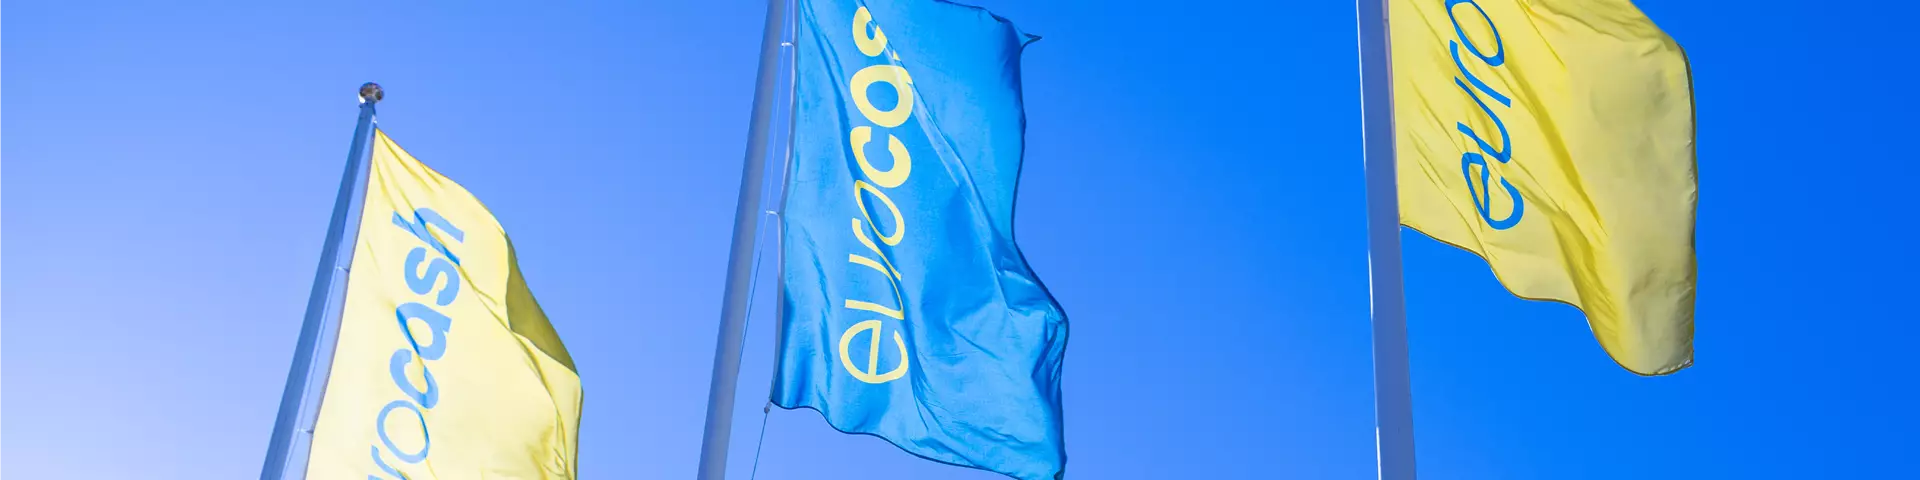 Eurocash gul och blå flaggor som vajar i vinden mot blå himmel.